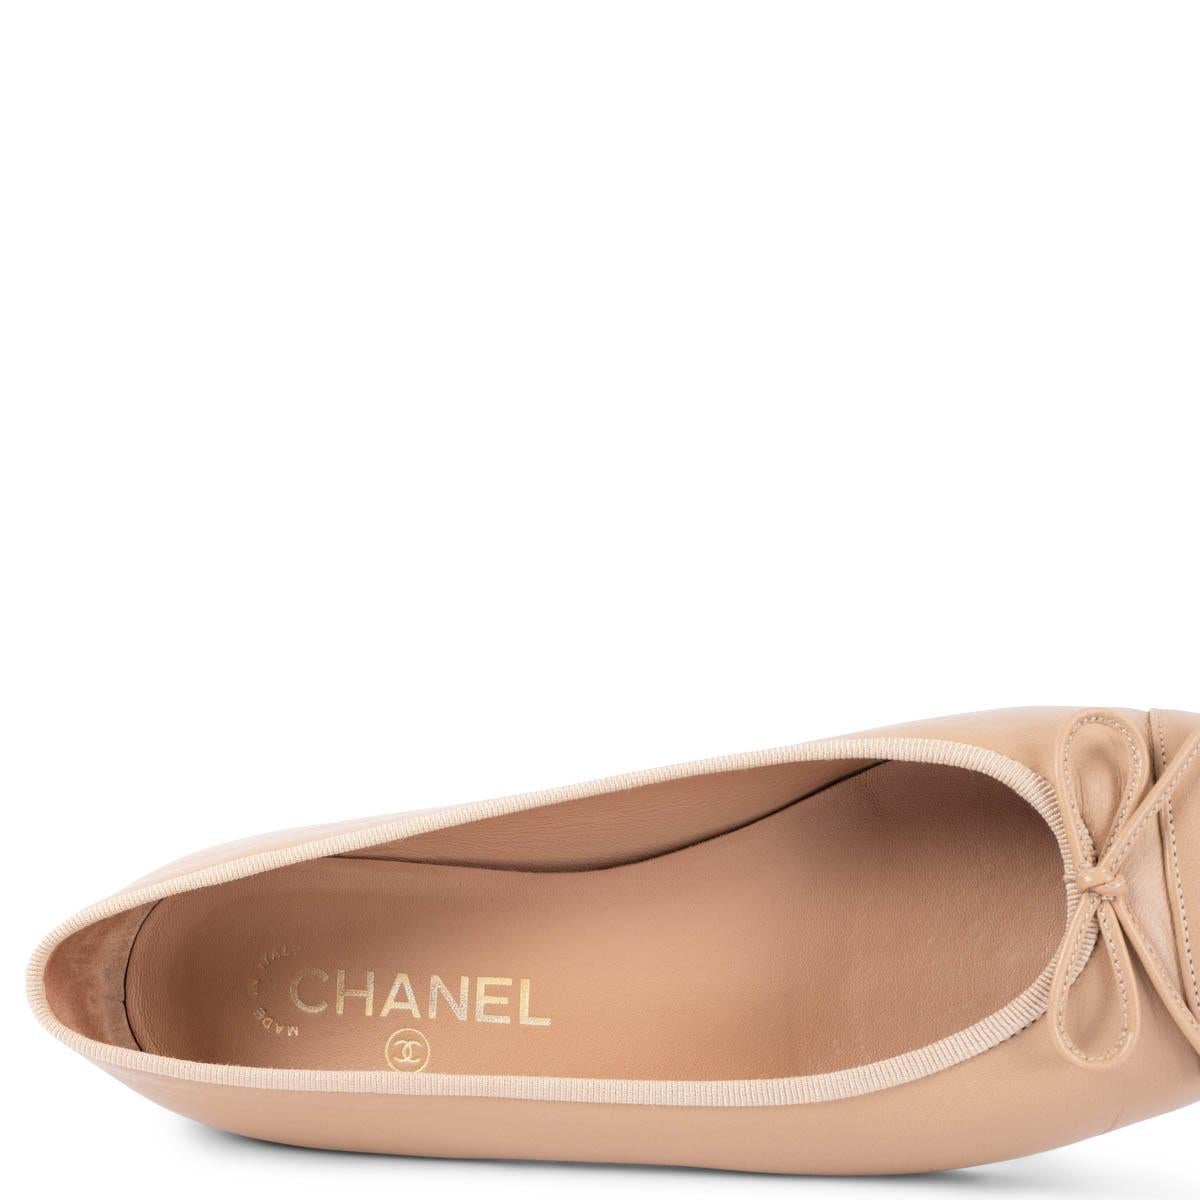 CHANEL beige leather CC Ballet Flats Shoes 38.5 fit 38 2